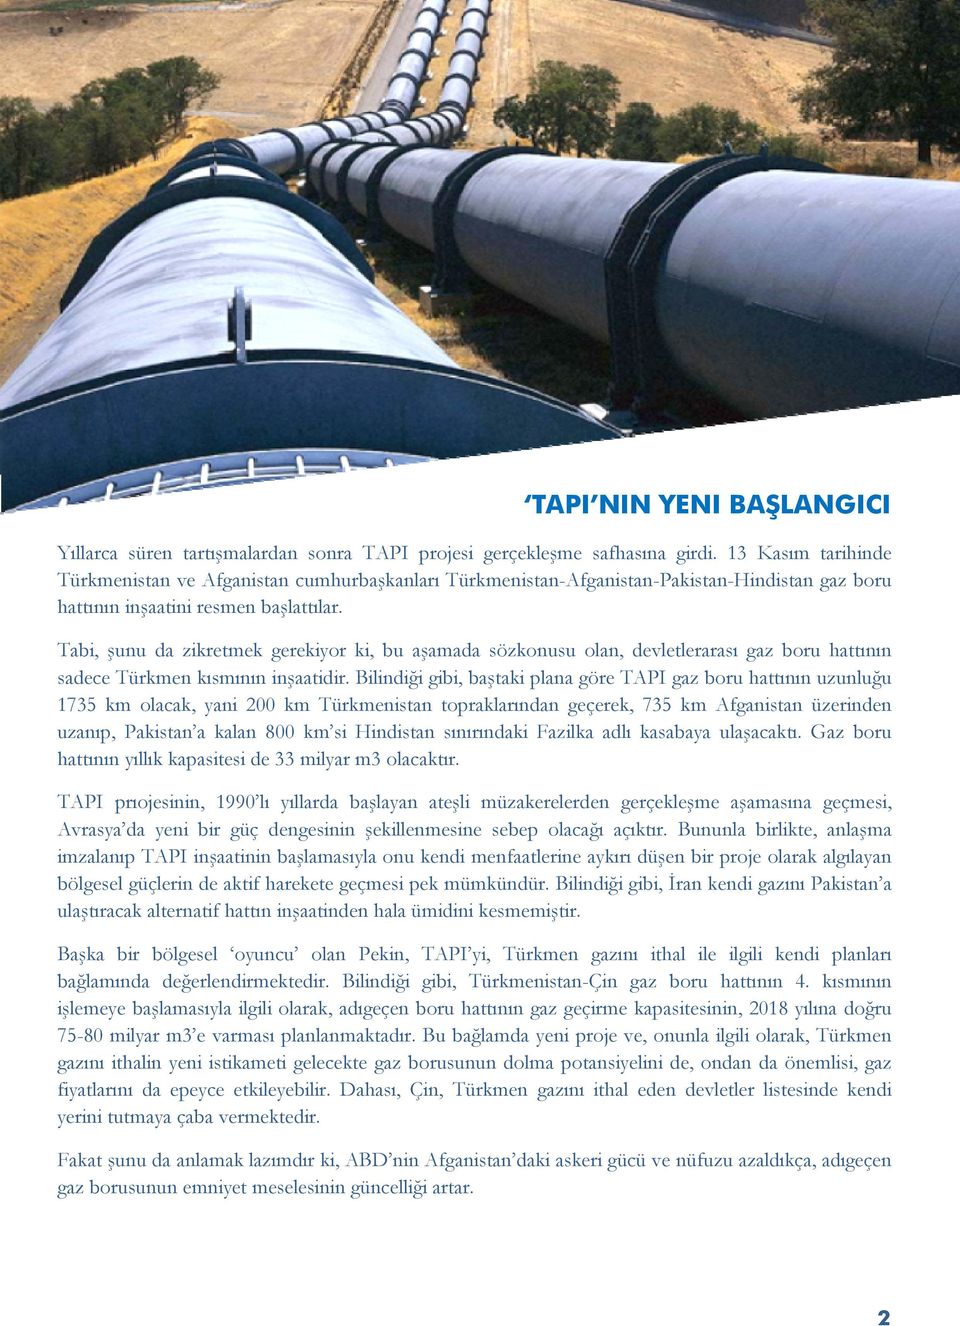 Tabi, şunu da zikretmek gerekiyor ki, bu aşamada sözkonusu olan, devletlerarası gaz boru hattının sadece Türkmen kısmının inşaatidir.